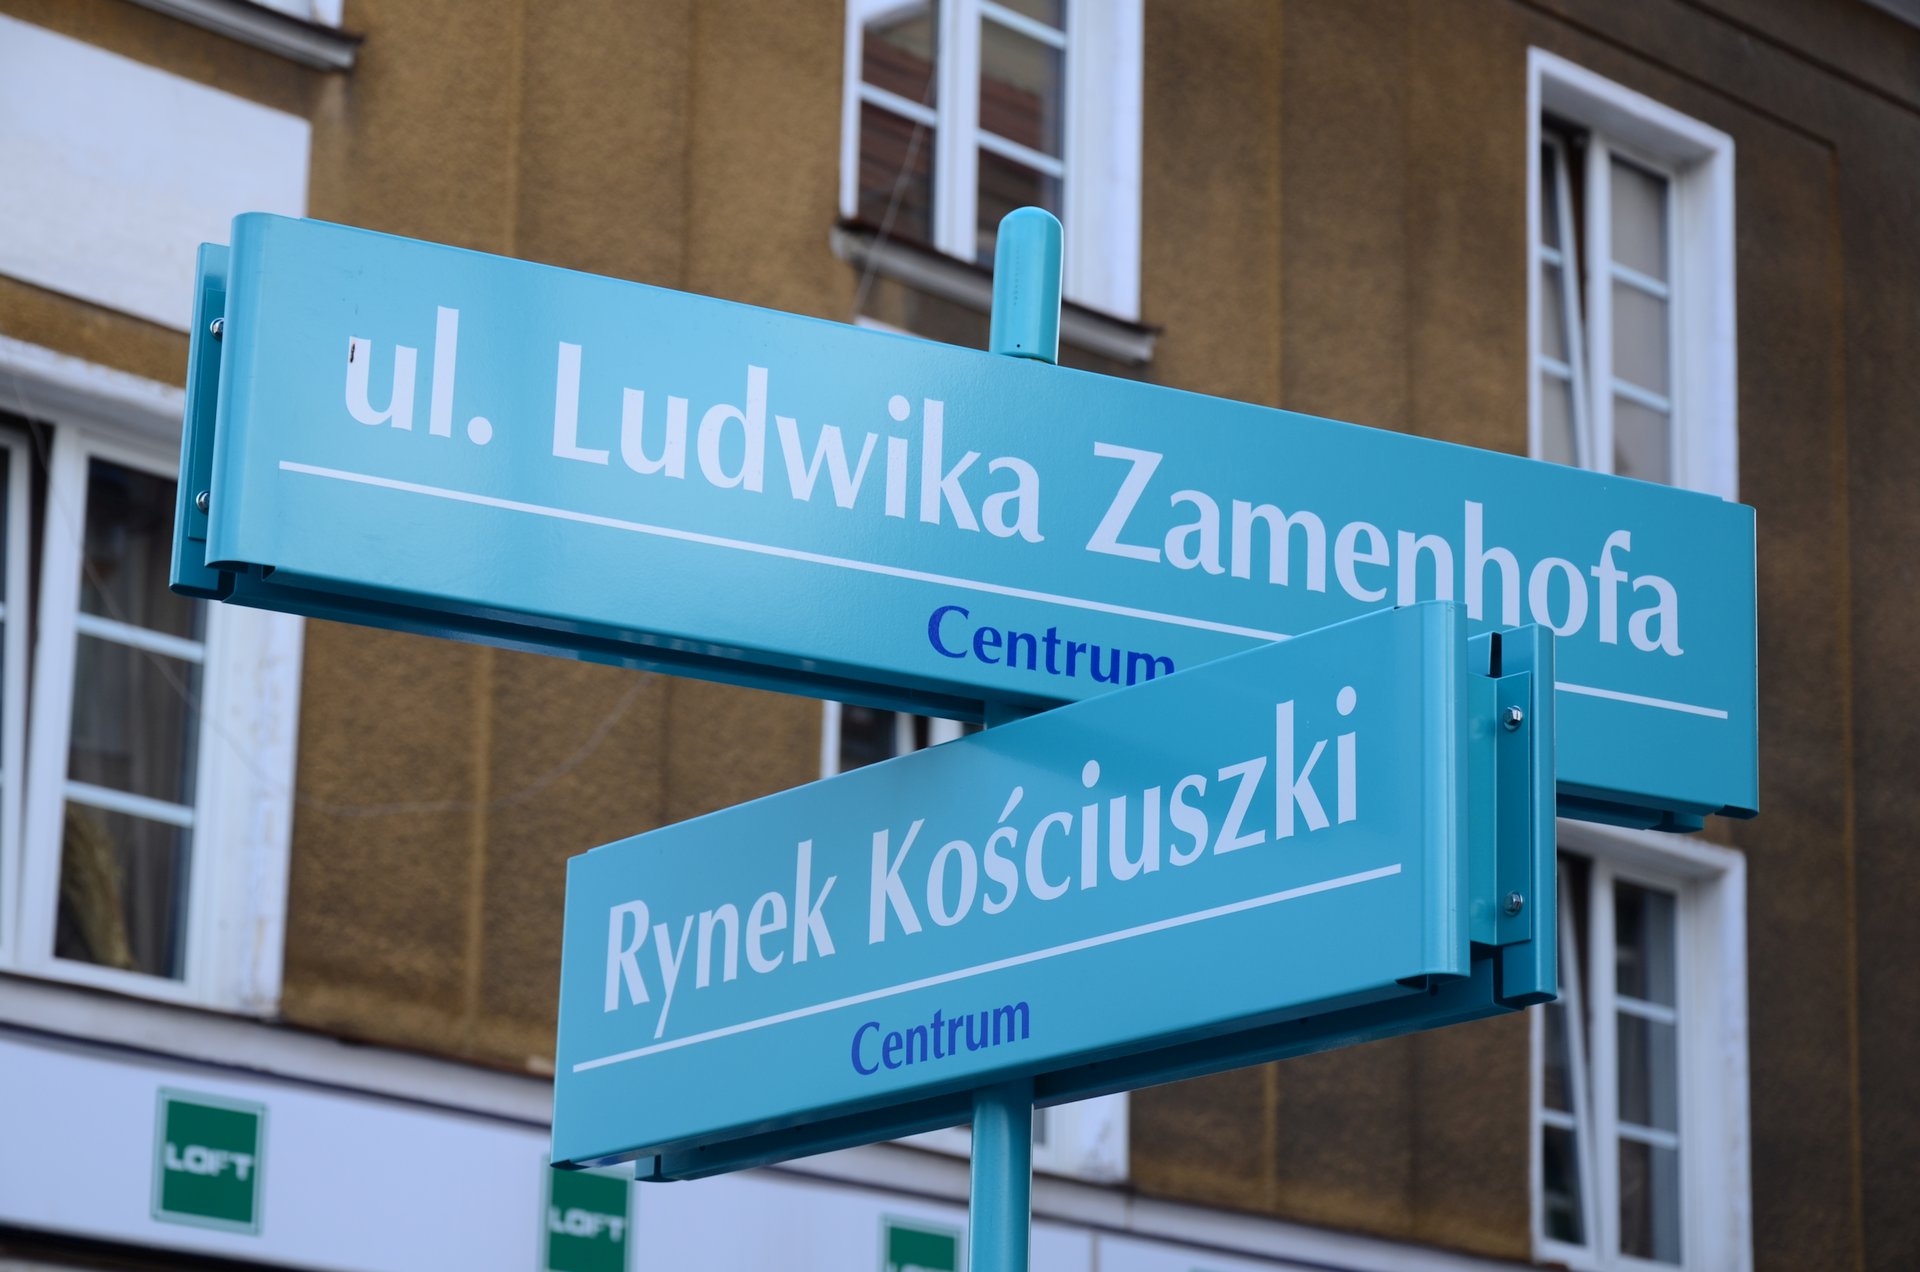 Białystok Ludwika Zamenhofa Rynek Kościuszki centrum tablicefree photo darmowe zdjęcie